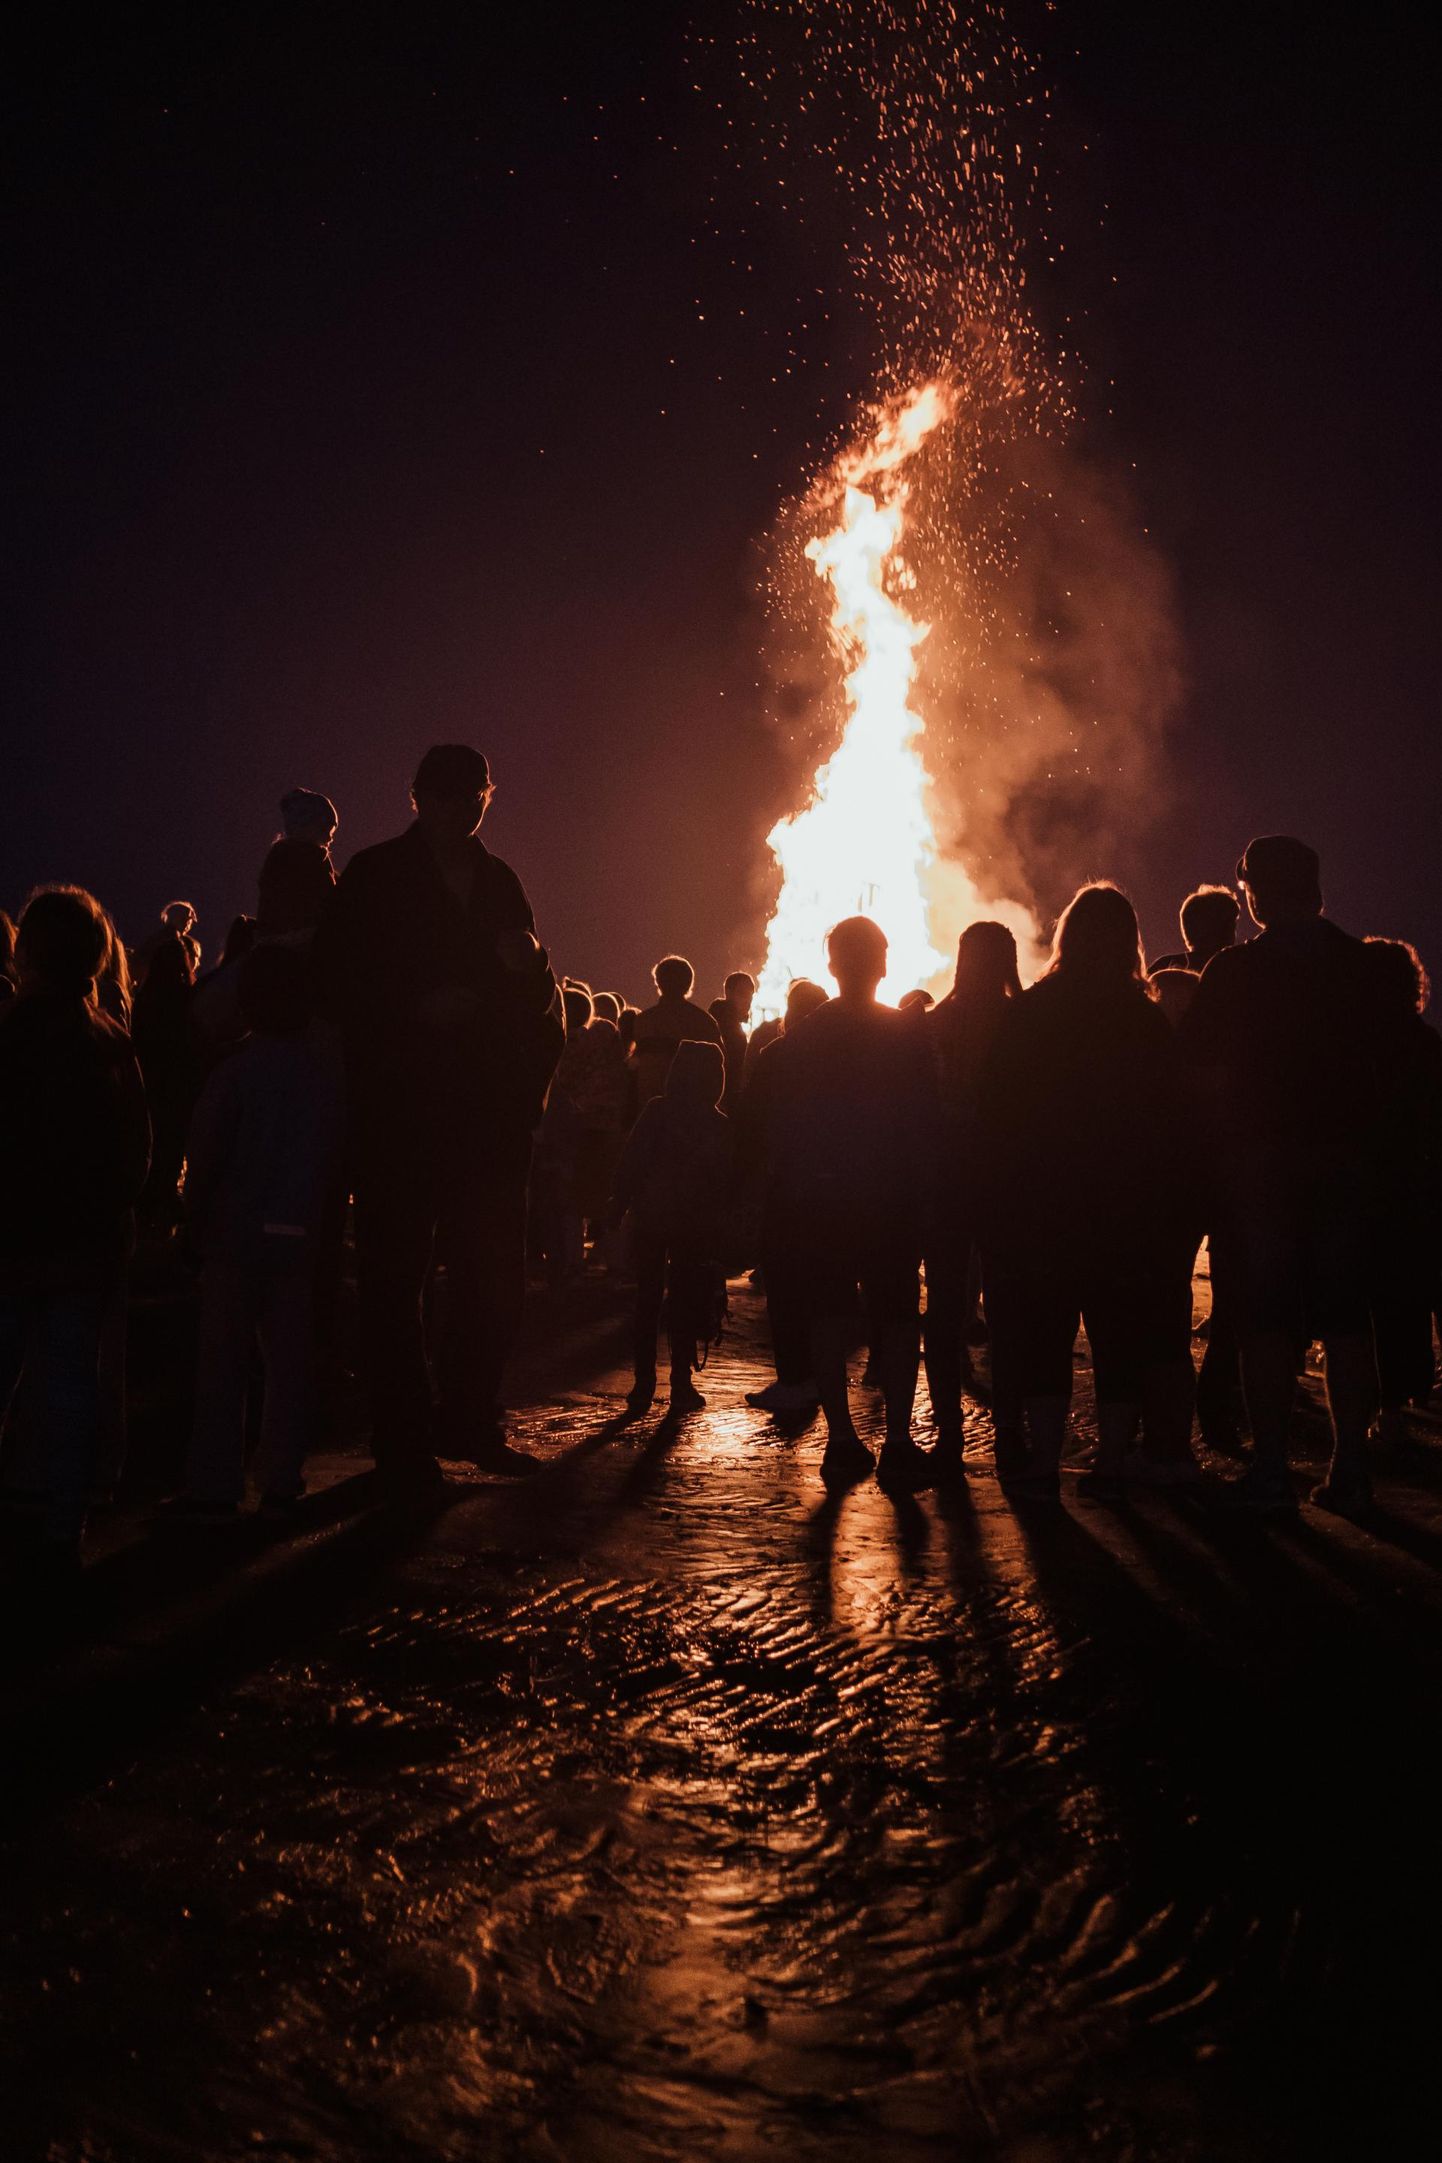 Nädalavahetusel süüdatakse Eesti eri paigus muinastulede öö puhul lõkked.